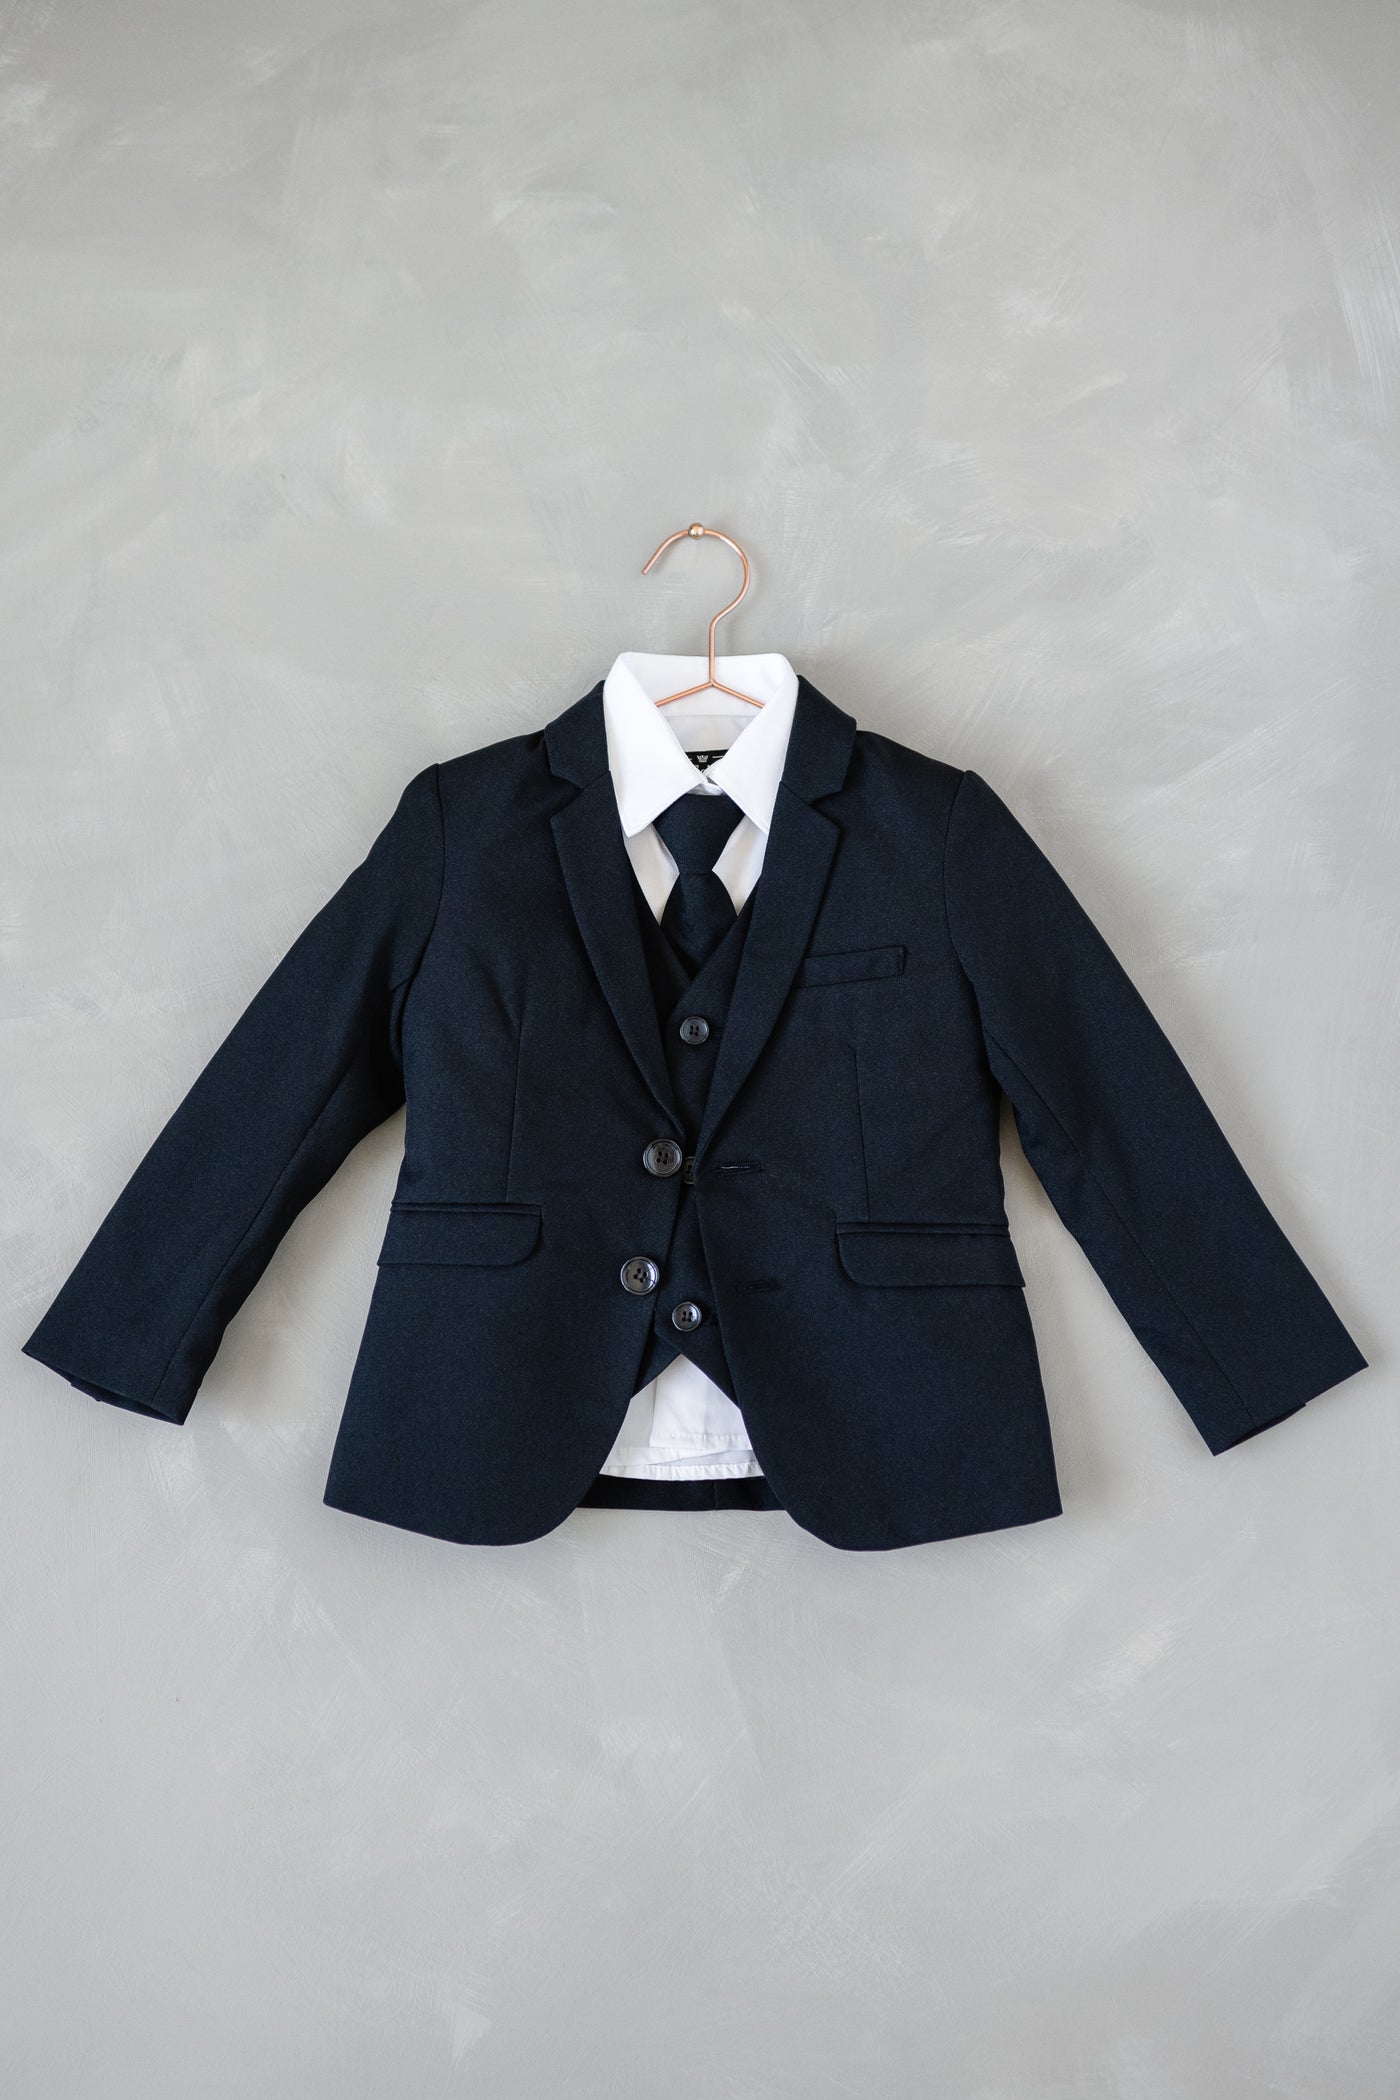 Boys Suit 5-Piece Set in Navy Blue Color